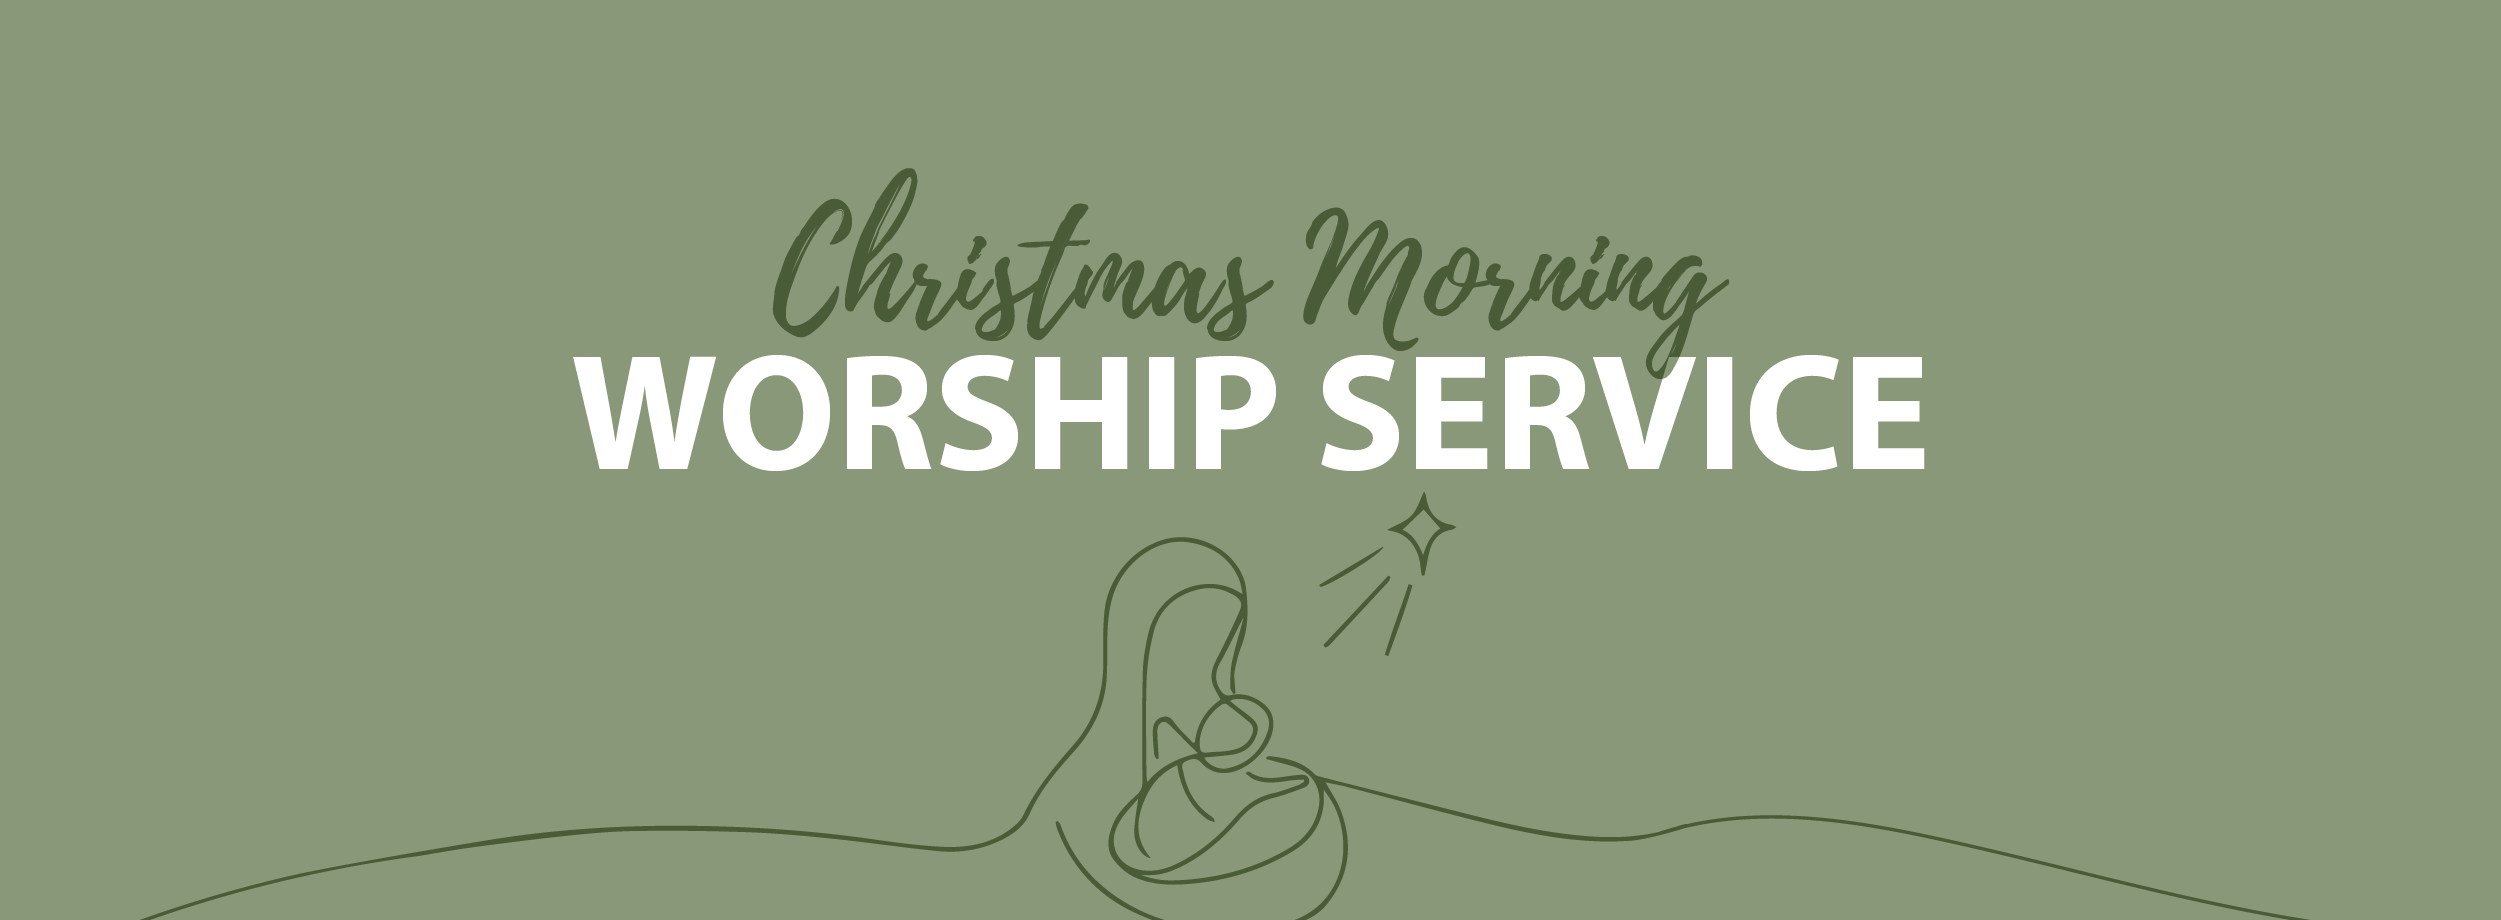 Christmas Morning Worship